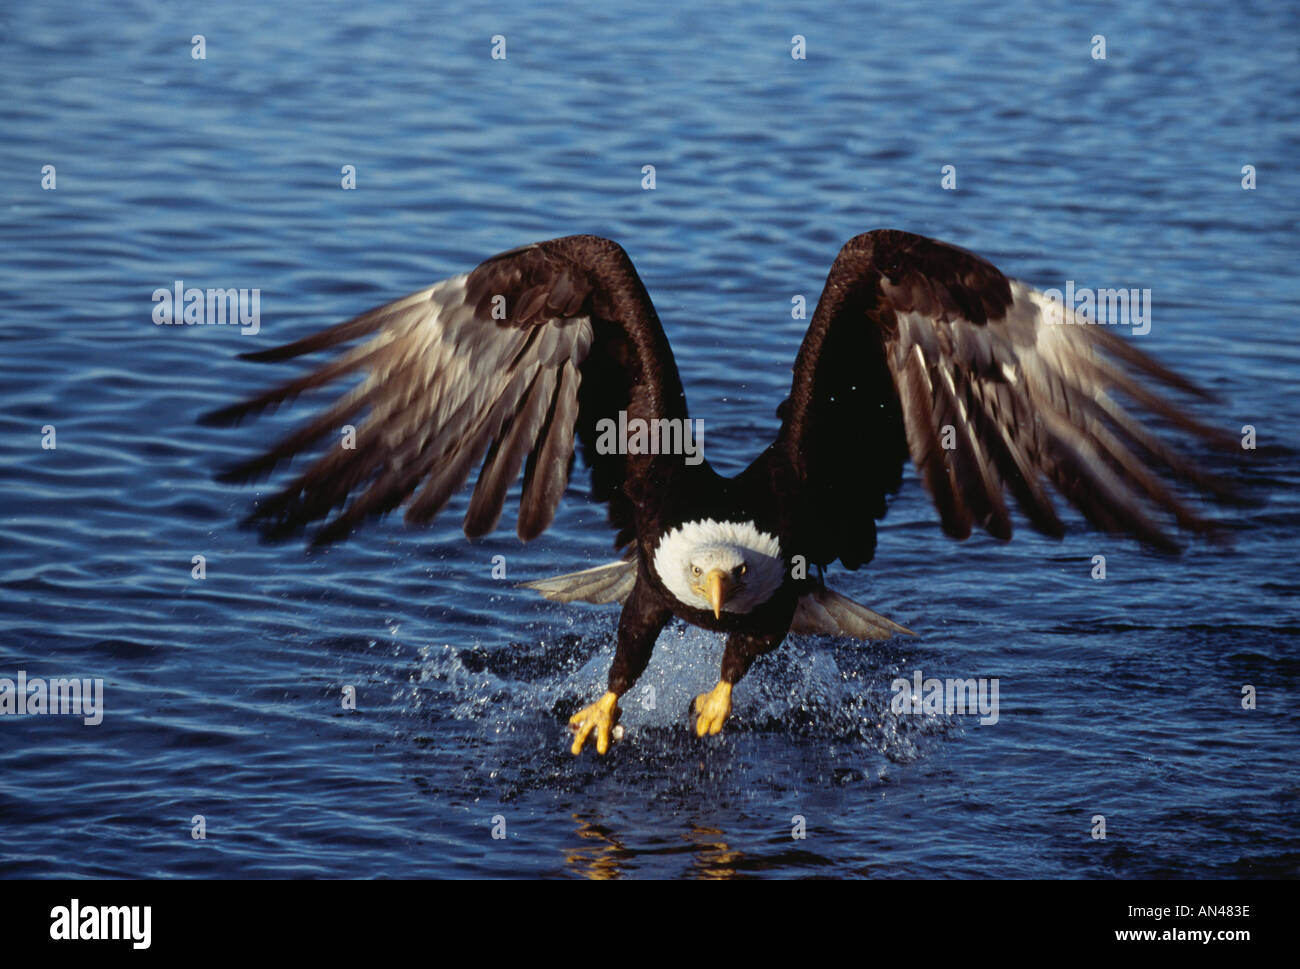 Bald Eagle Haliaeetus leucocephalus adult catching fish flying